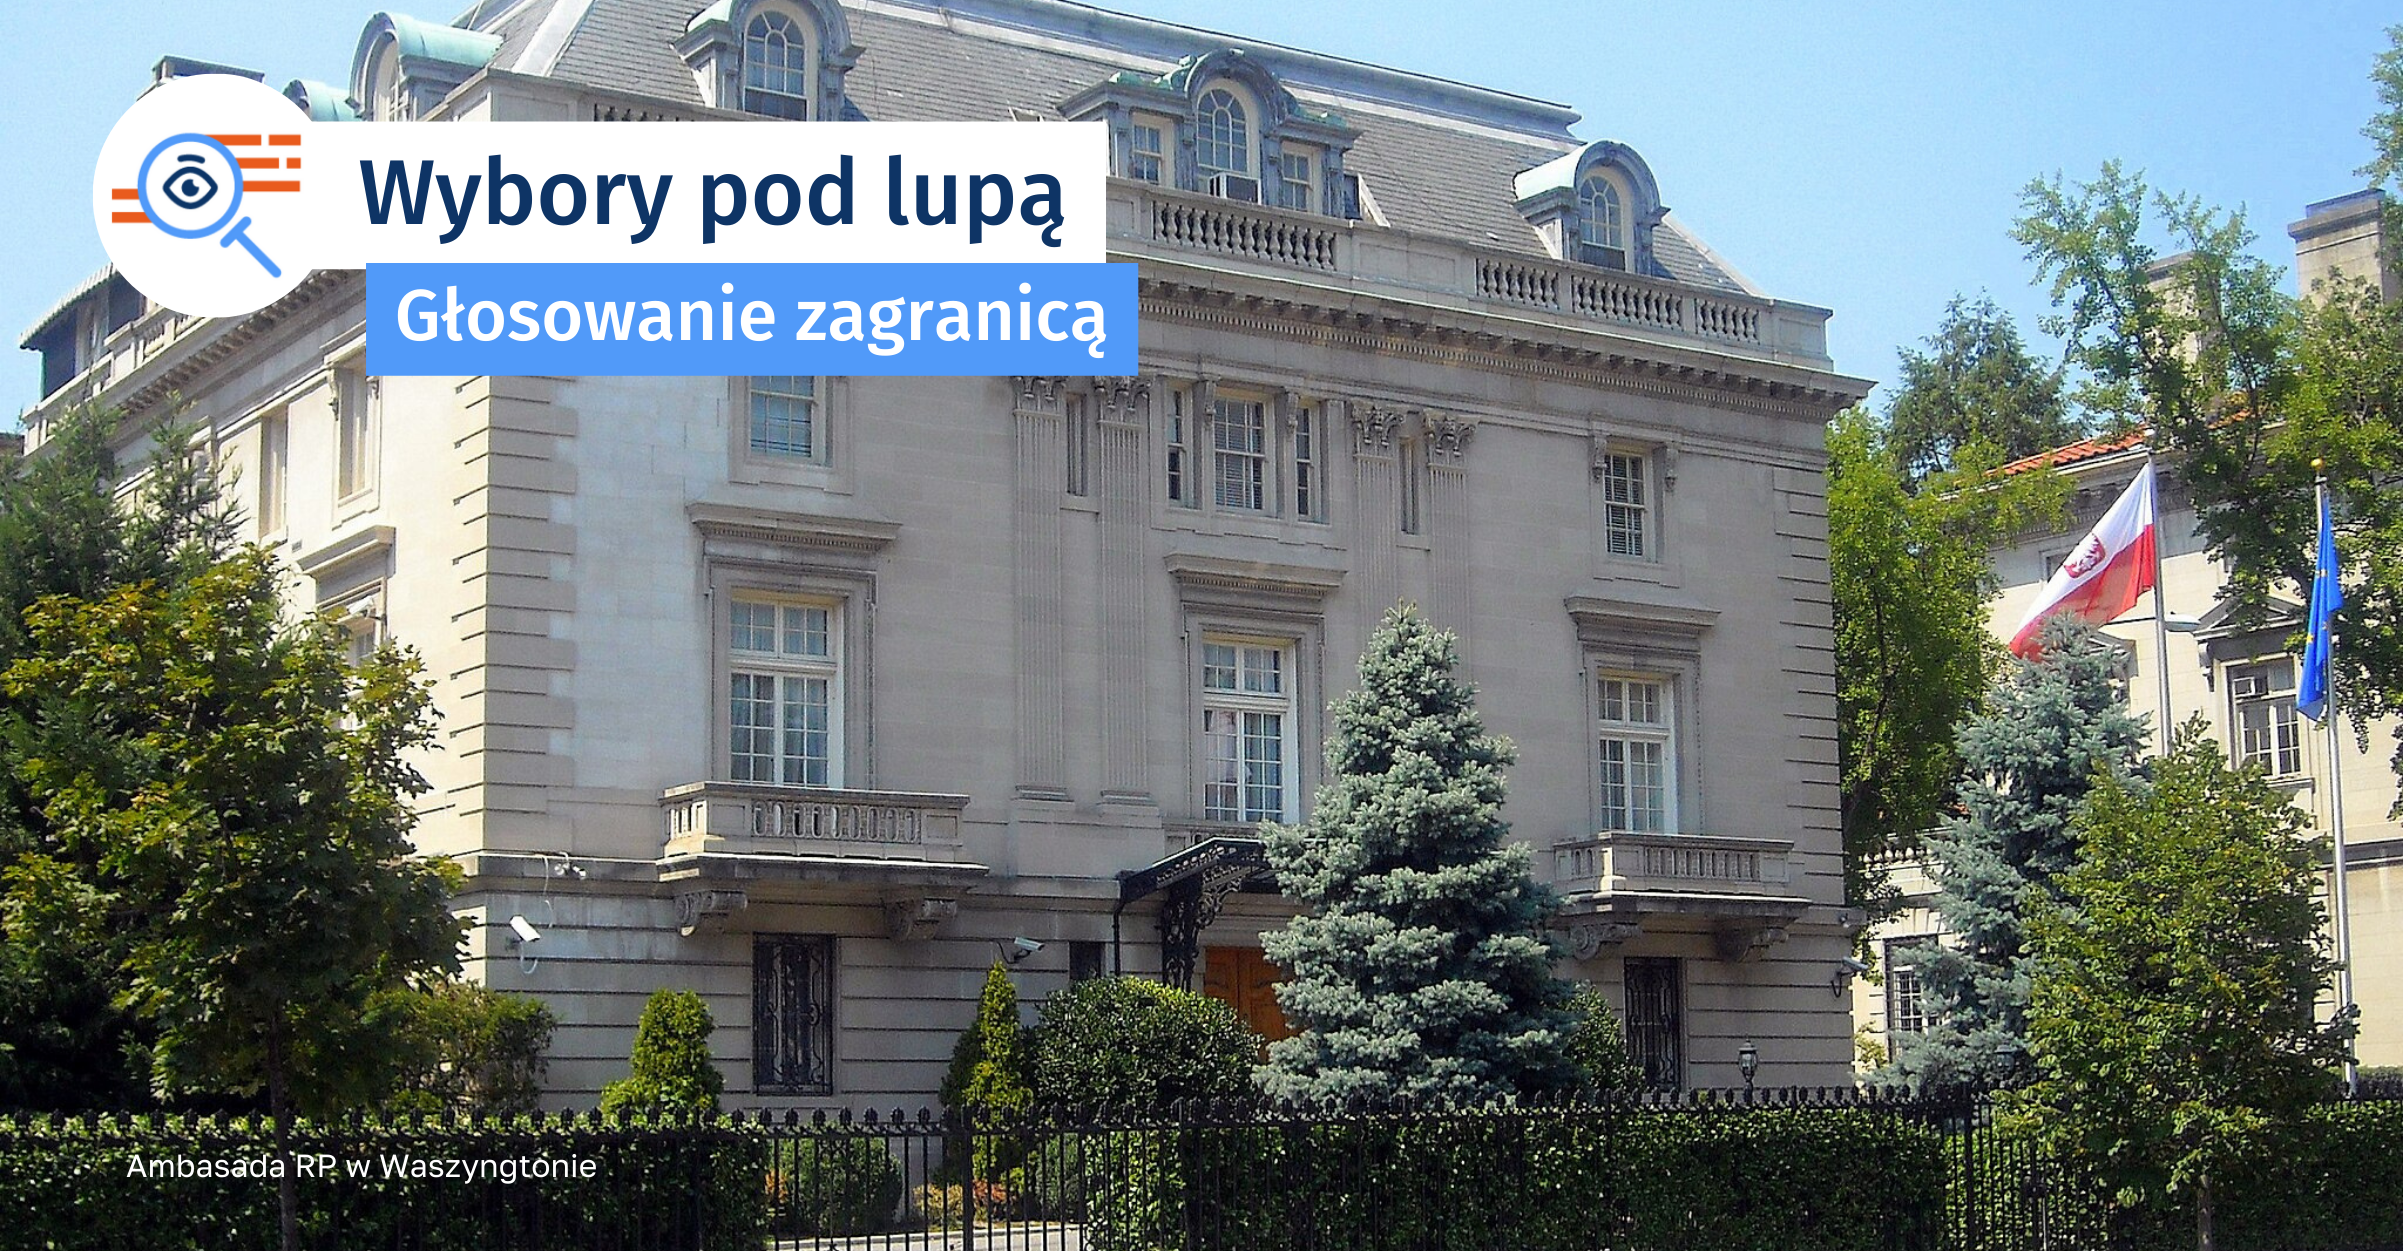 Zdjęcie Ambasady RP w Waszyngtonie. Czteropiętrowy budynek z jasnymi, biało-beżowymi cegłami.